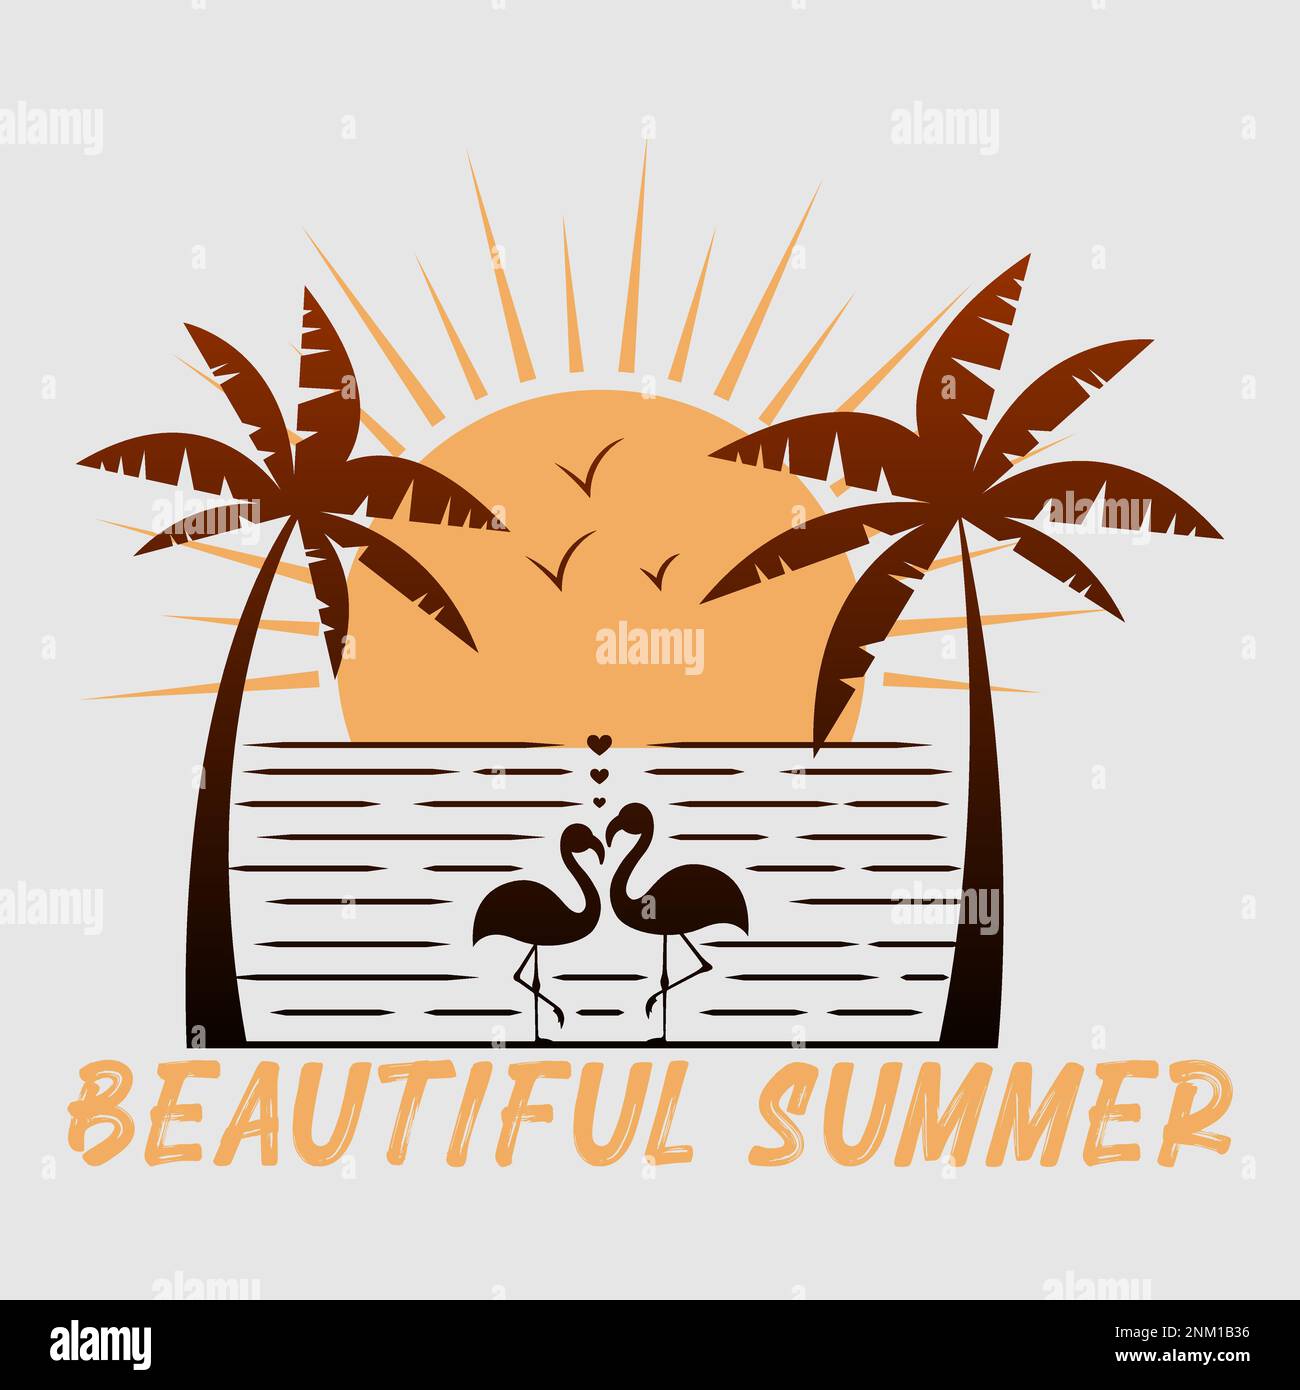 Beautiful Summer. Summer theme illustration. Editable, vector illustration. Stock Vector